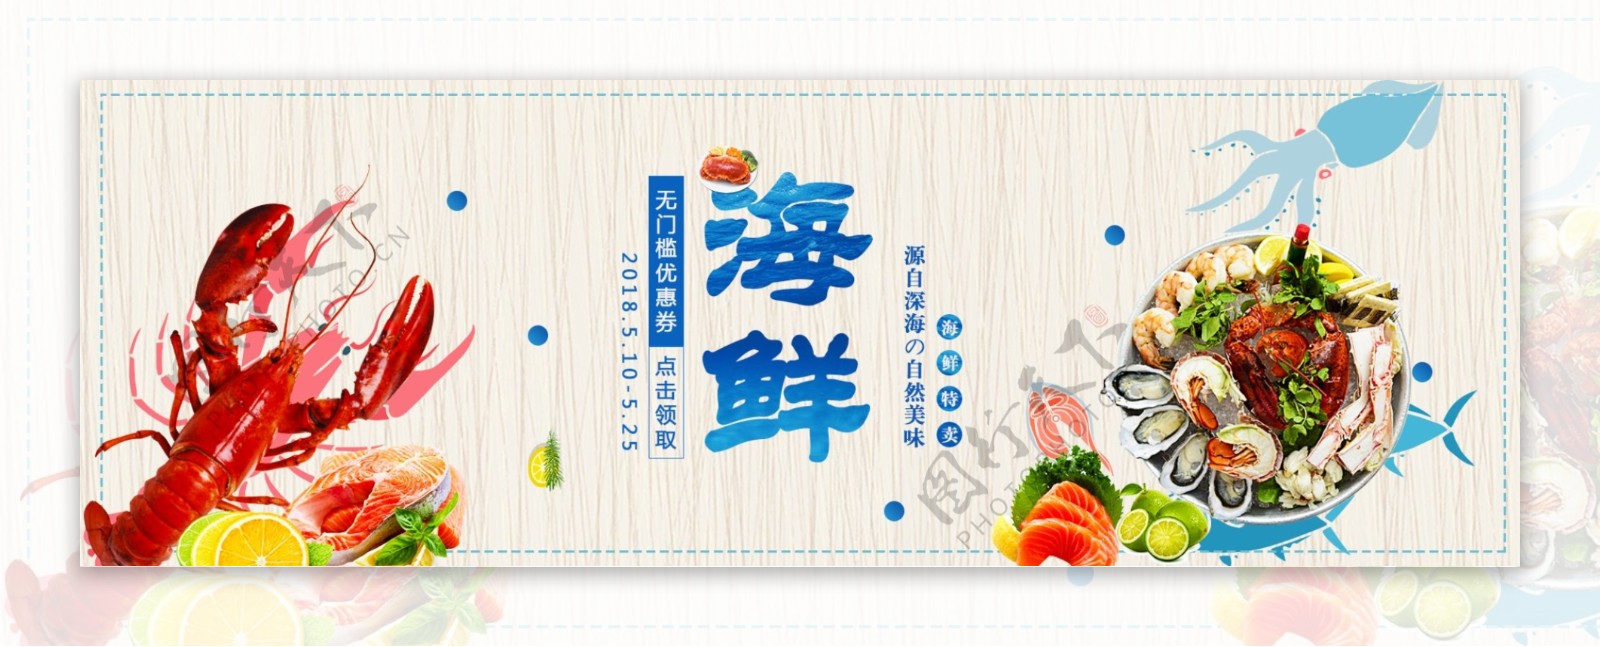 海鲜美食淘宝海报banner